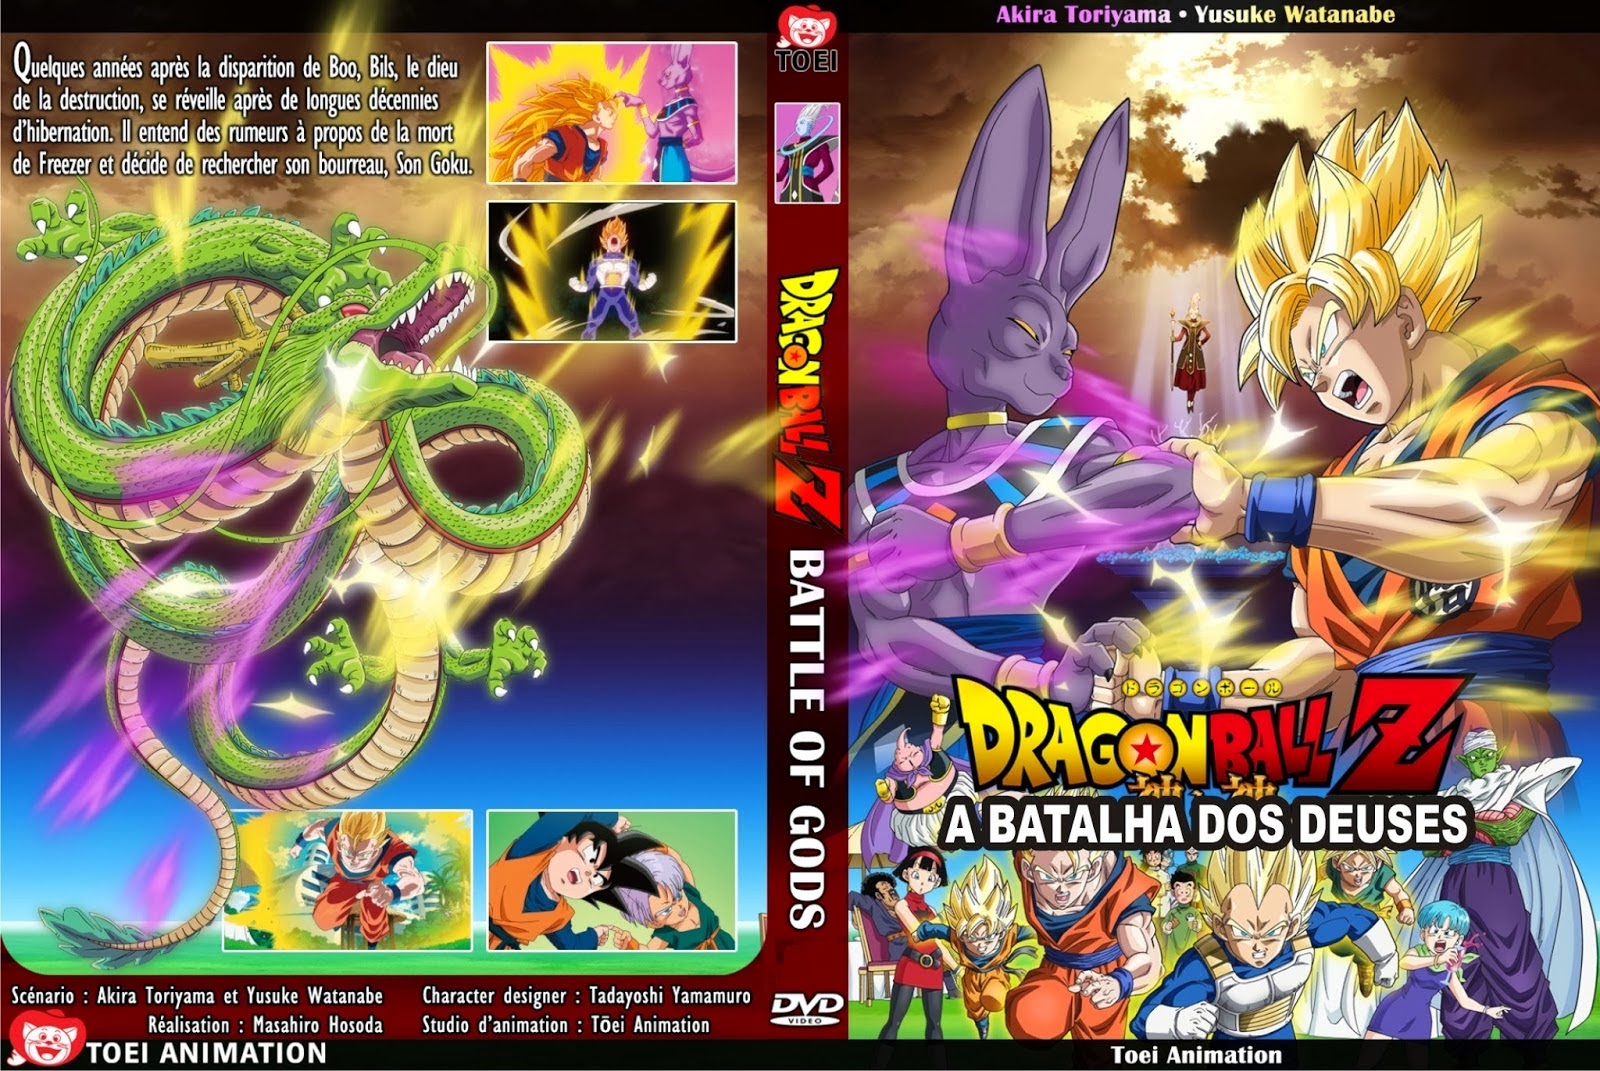 G1 - Dragon Ball Z: A Batalha dos Deuses está em cartaz em Rio